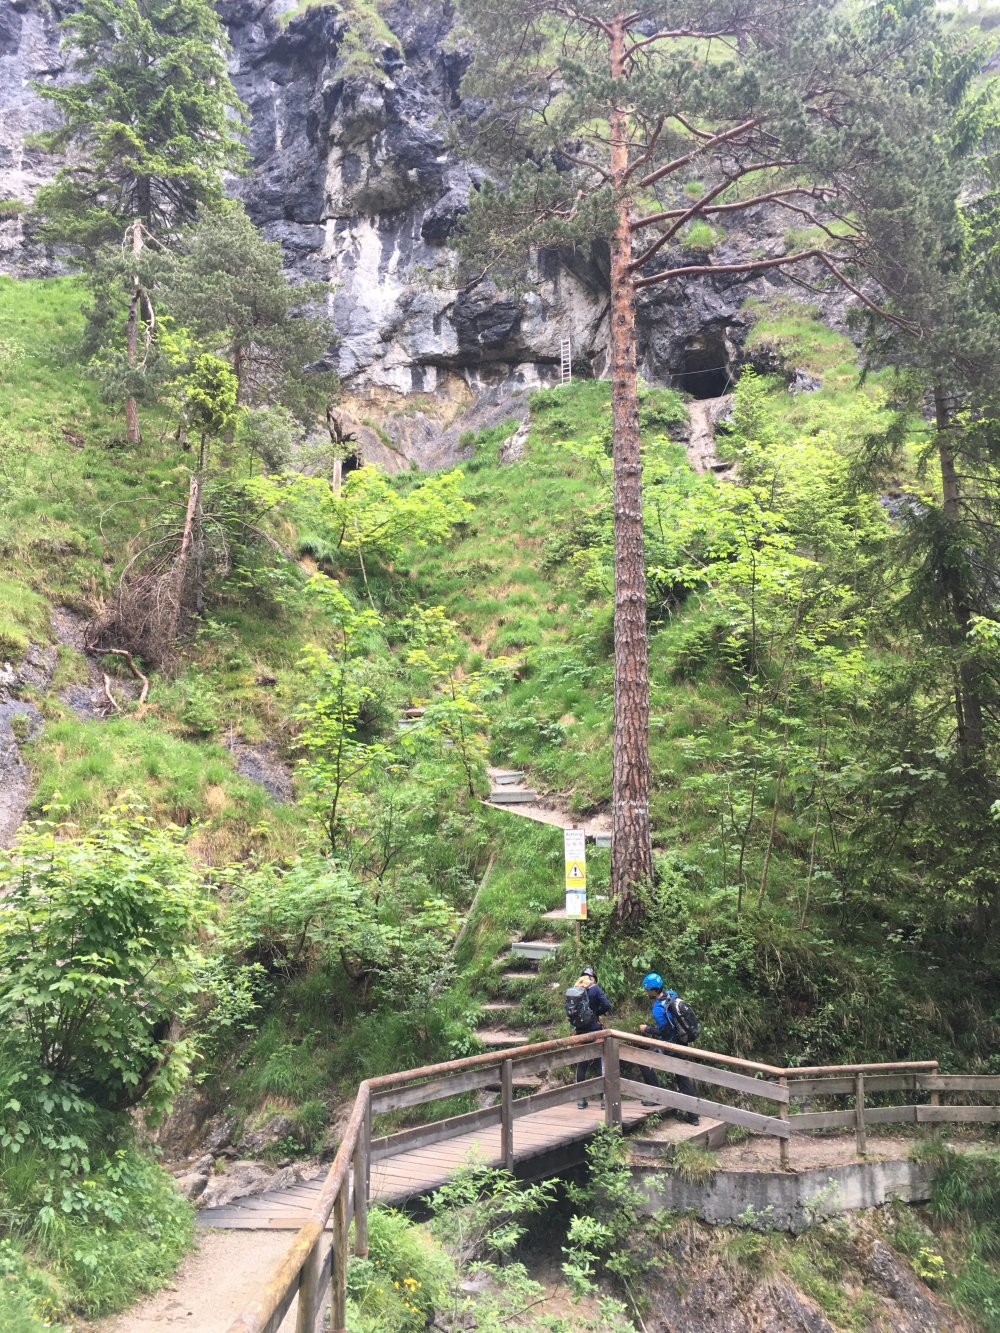 Anseilen auf der Brücke (Einstieg Hausbachfall Klettersteig)